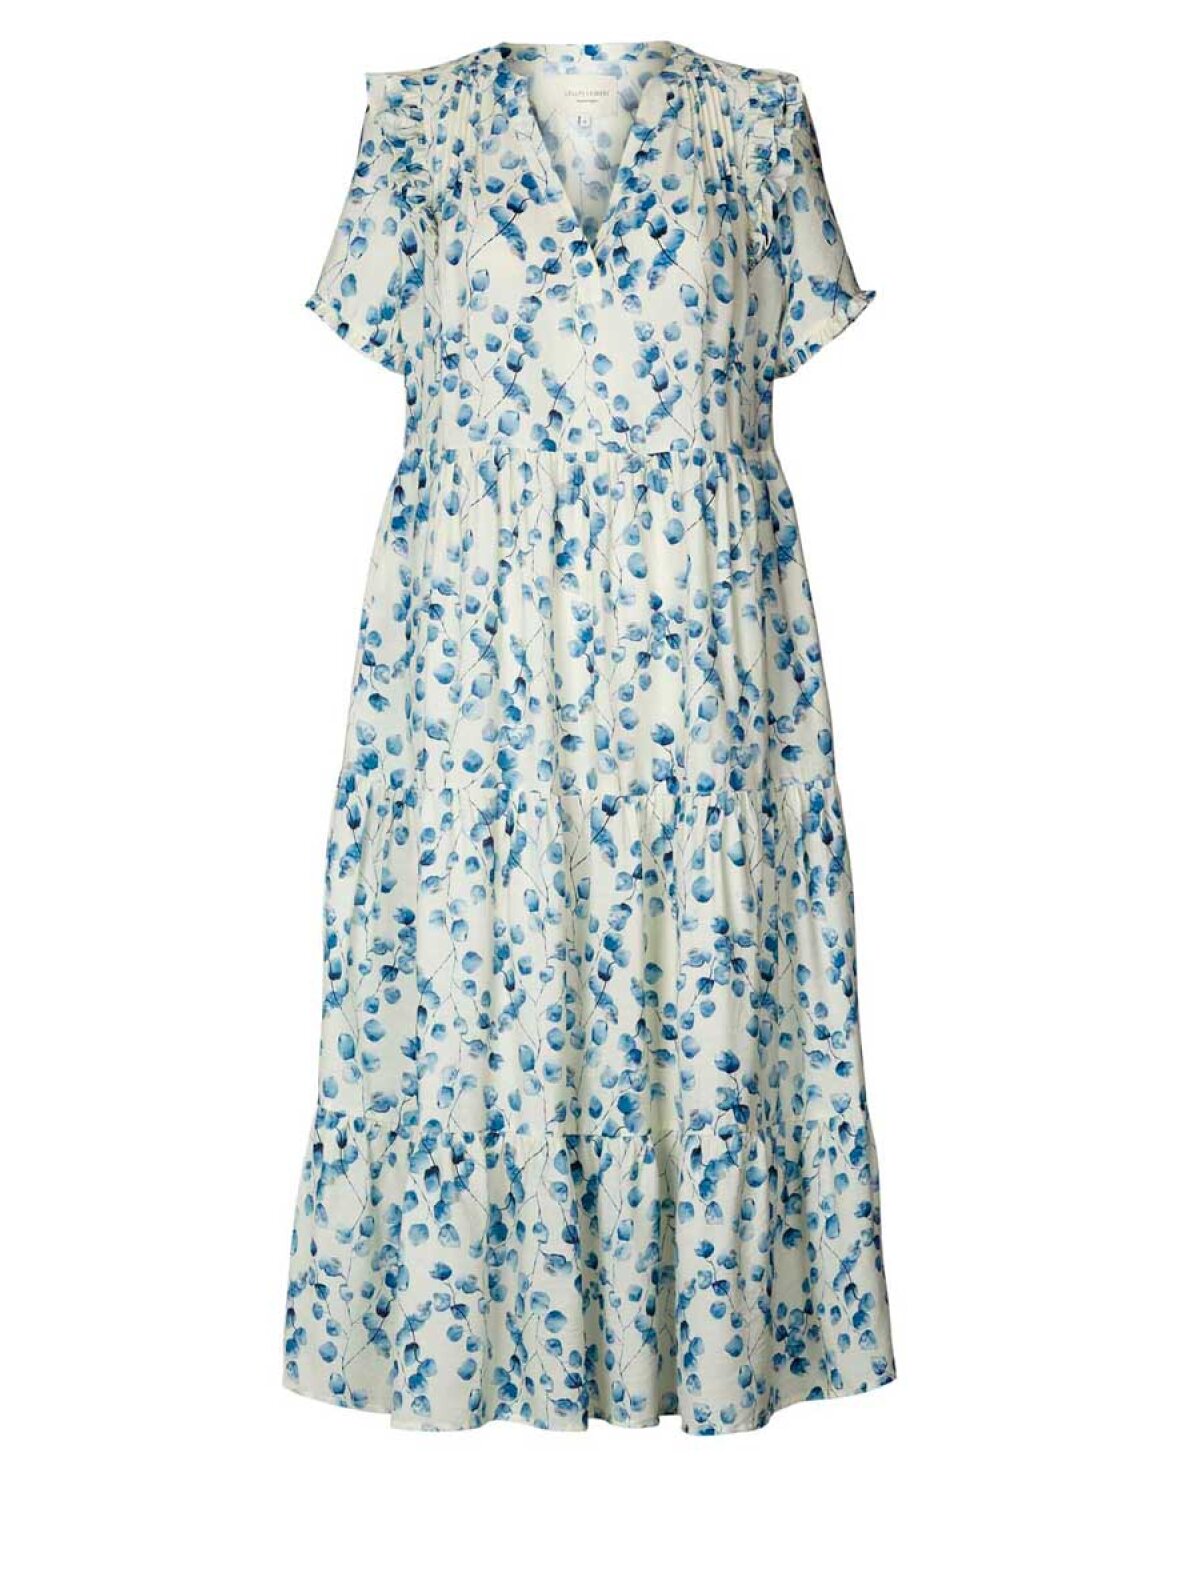 Geologi Tårer nyheder A'POKE - Lollys Laundry Freddy Dress Creme - Shop blå blomstret kjole